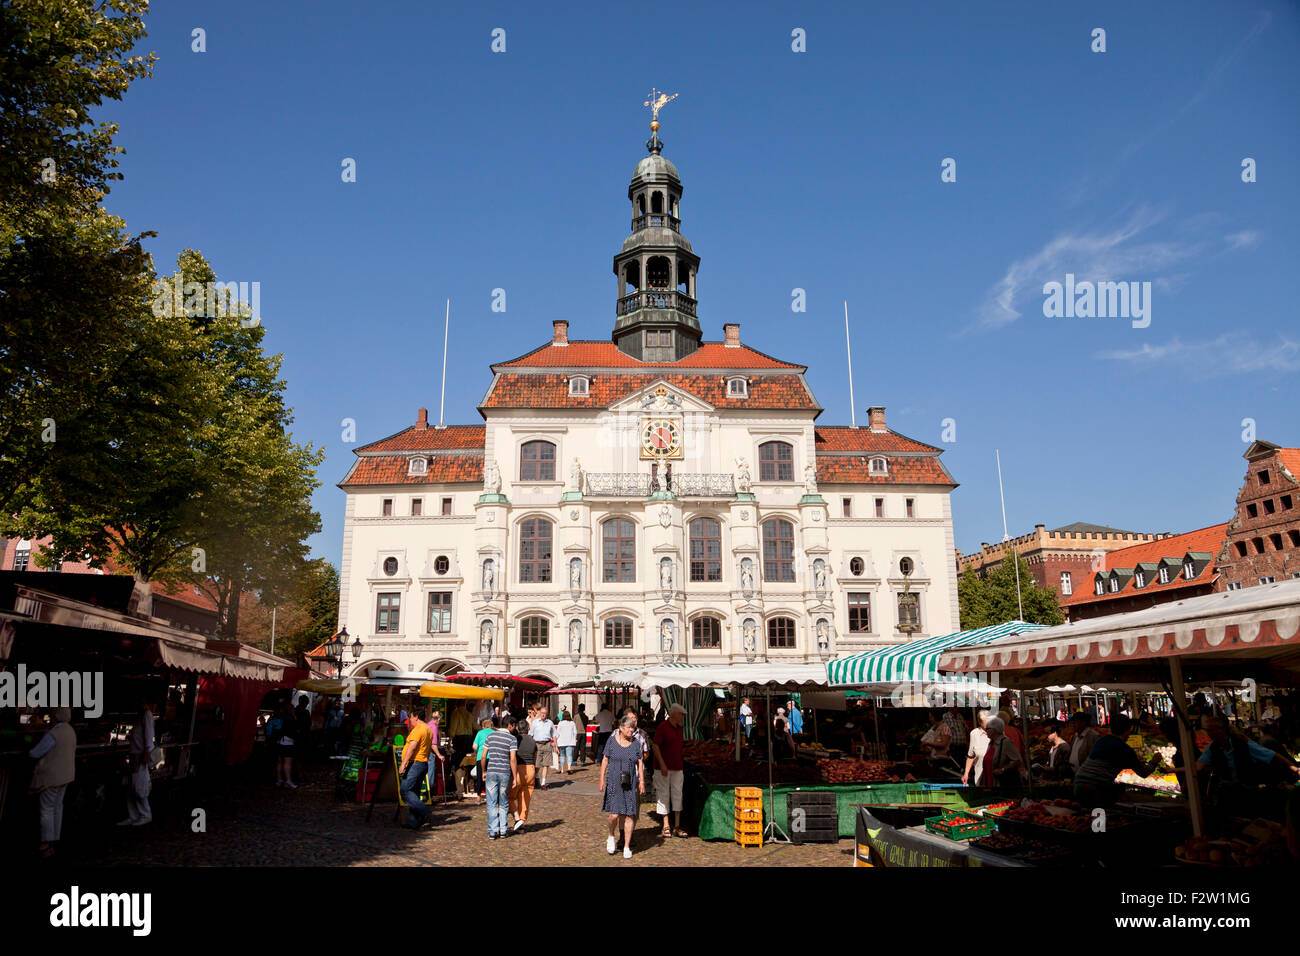 El edificio histórico del ayuntamiento y el mercado, la ciudad hanseática de Lüneburg, Baja Sajonia, Alemania Foto de stock